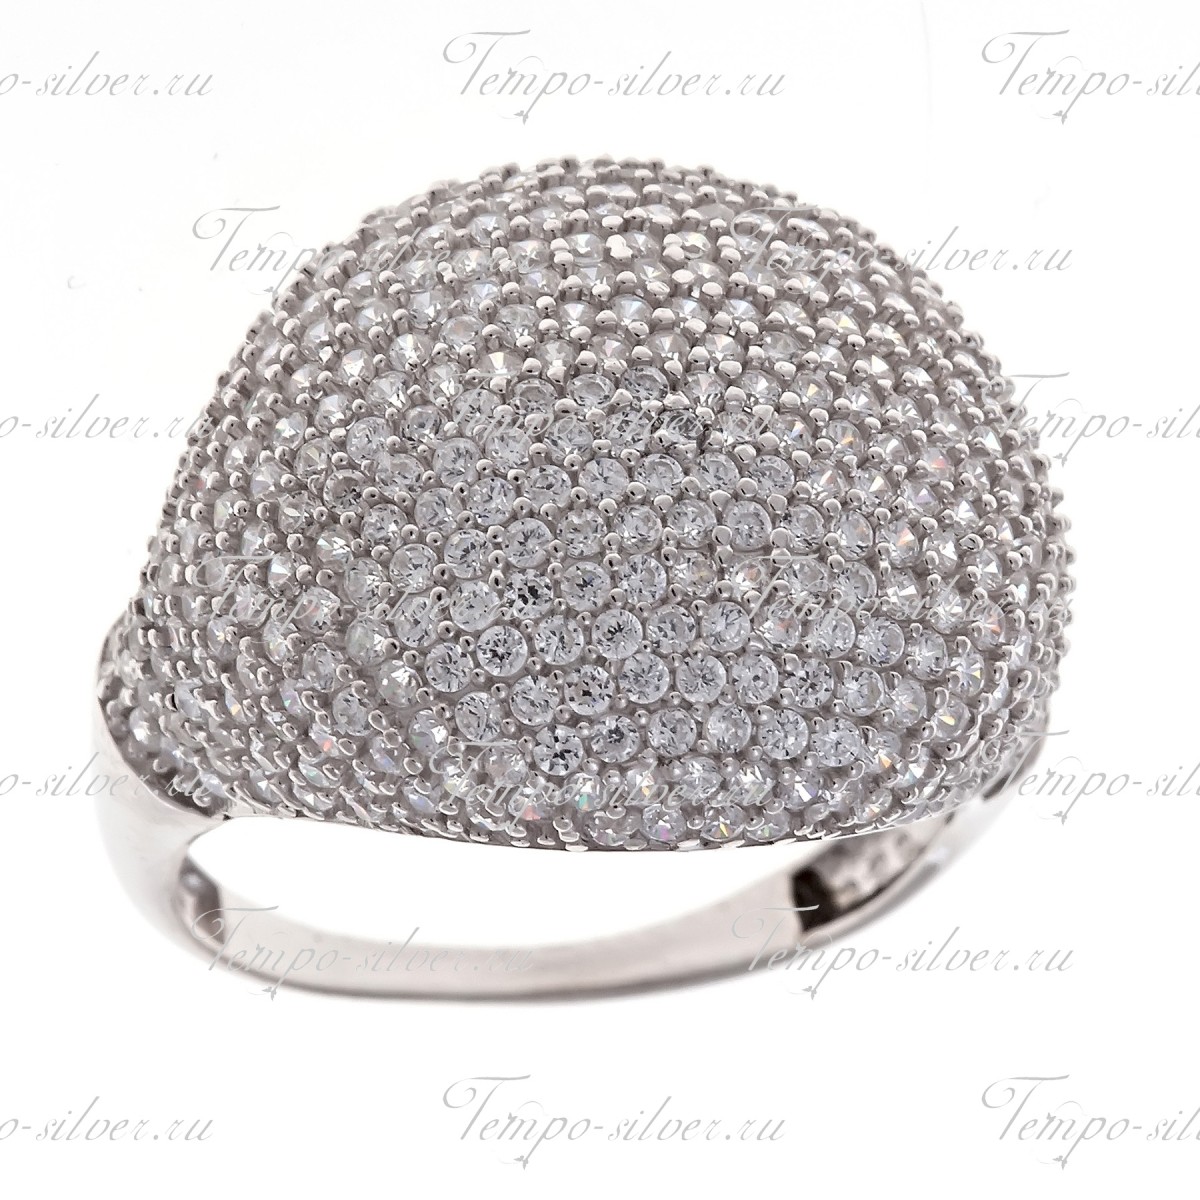 Кольцо из серебра с широкой выпуклой поверхностью, украшенной россыпью белых камней цена